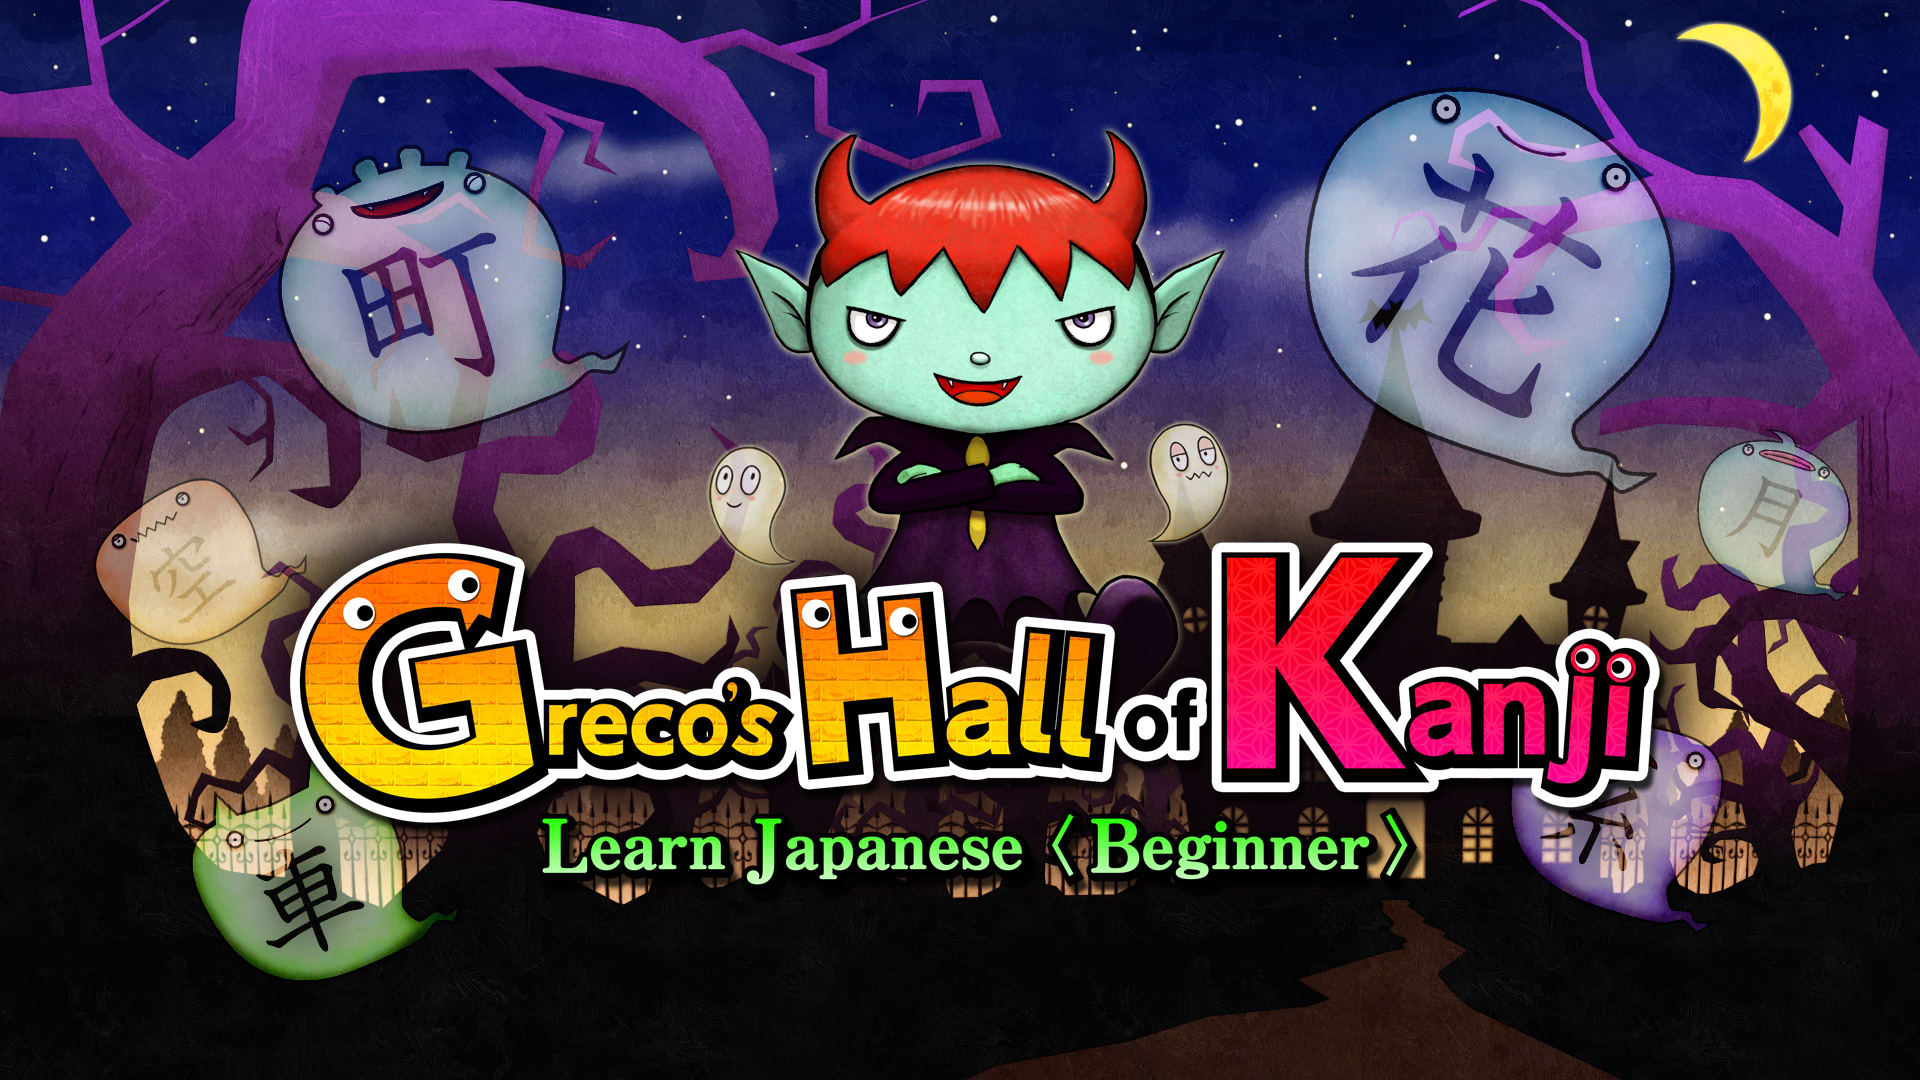 Greco’s Hall of Kanji　Learn Japanese< Beginner >